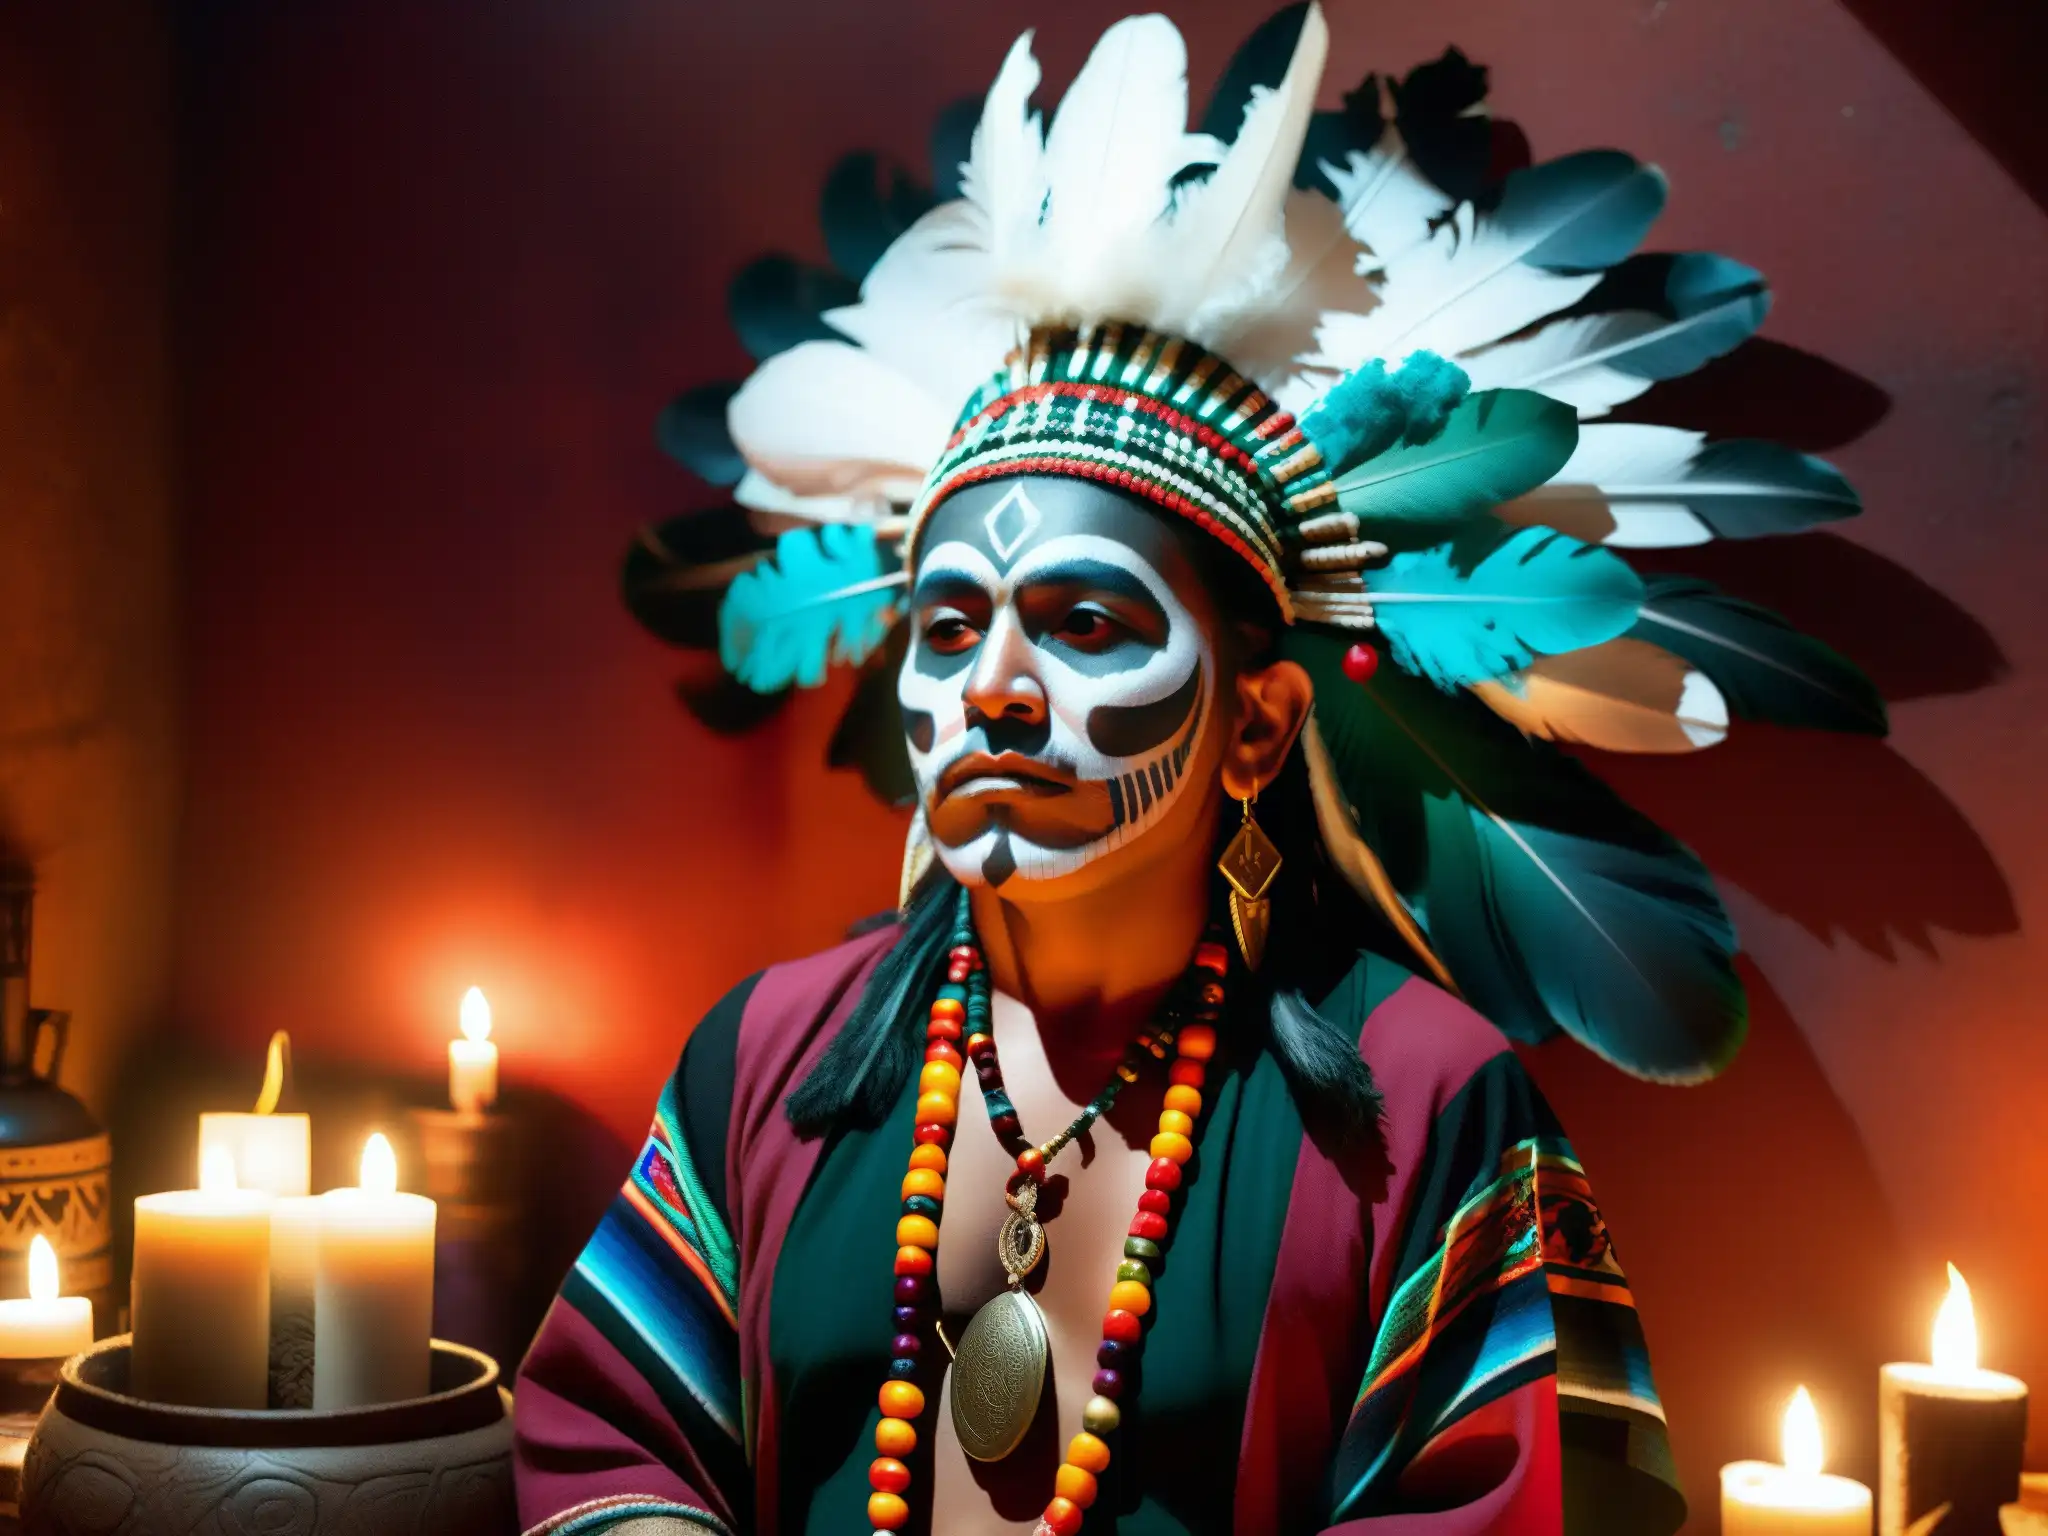 Un chamán mexicano realiza un ritual en una habitación ahumada, rodeado de elementos simbólicos